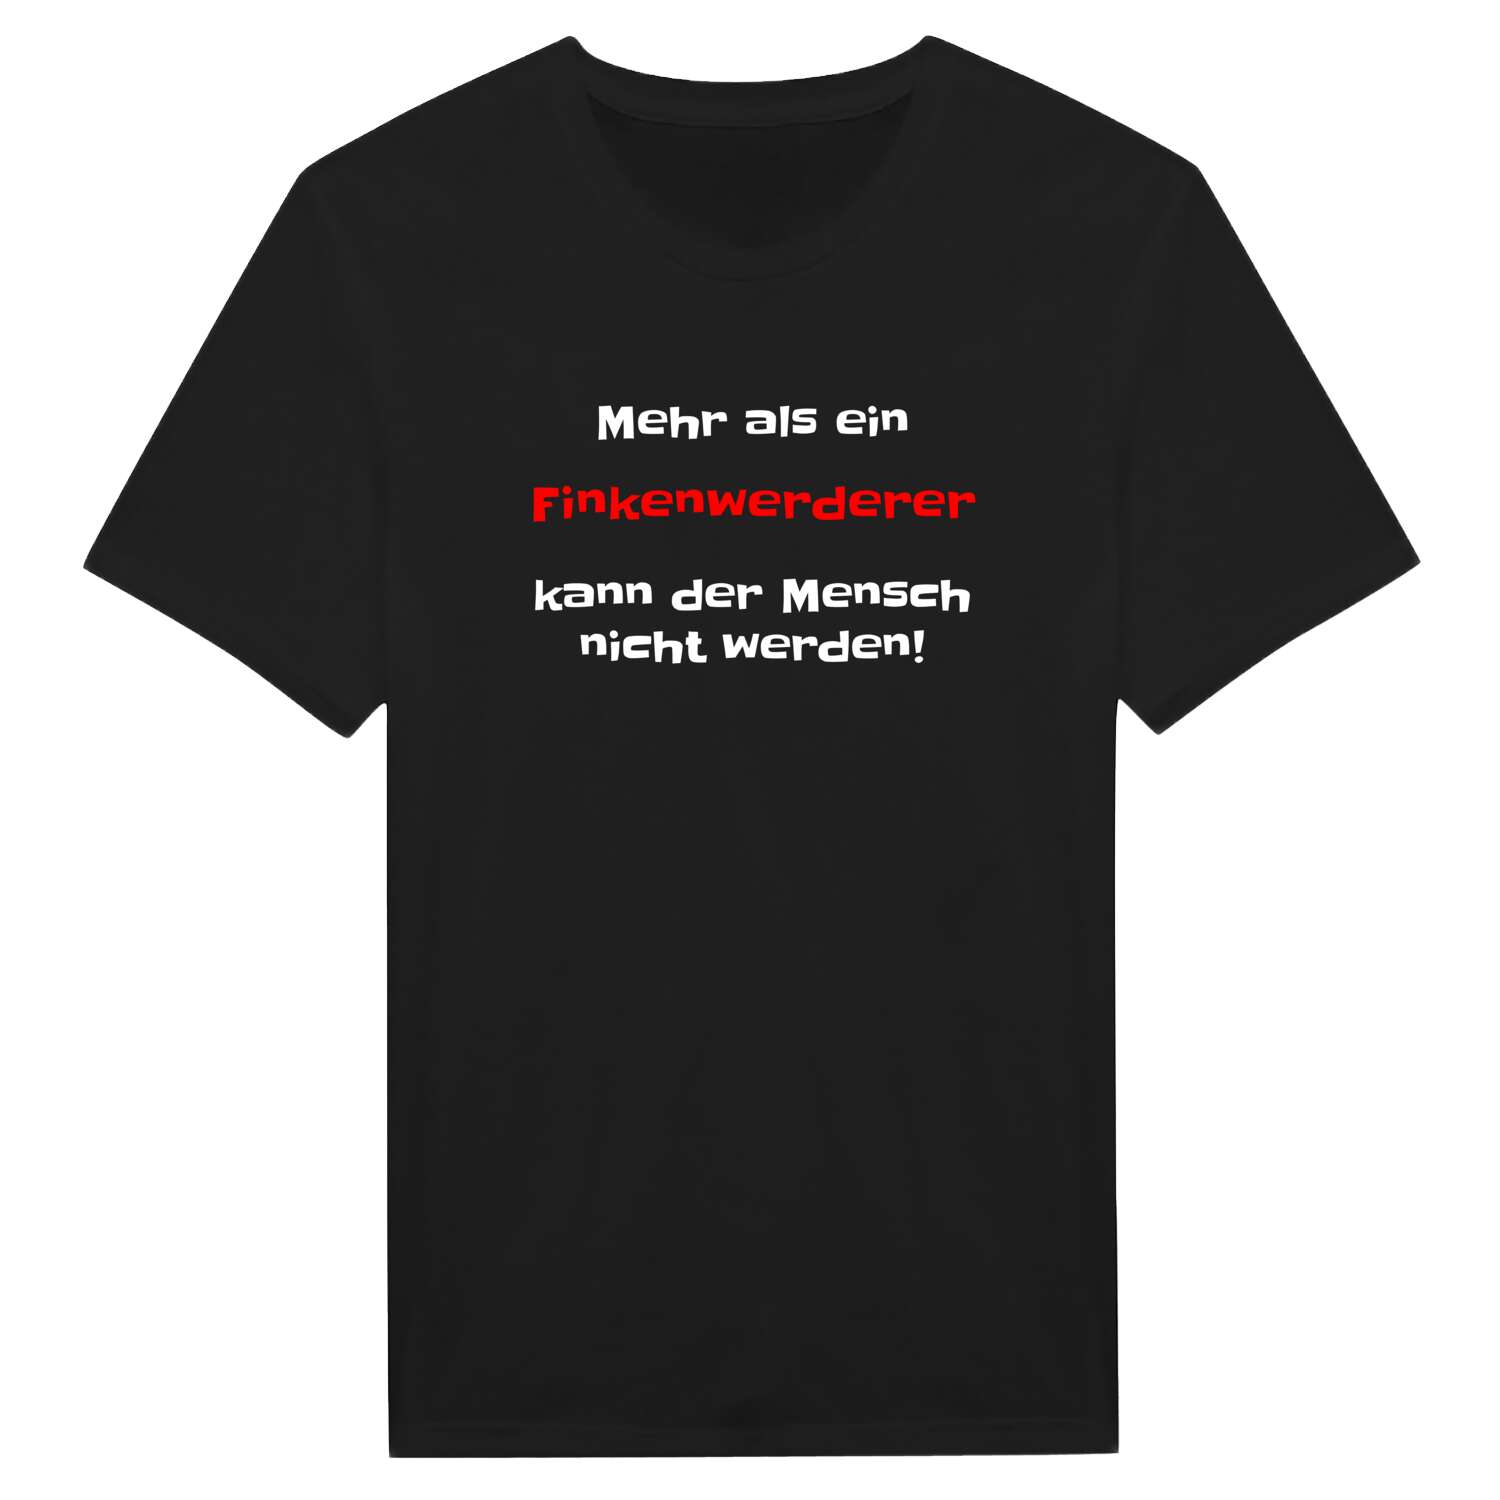 Finkenwerder T-Shirt »Mehr als ein«